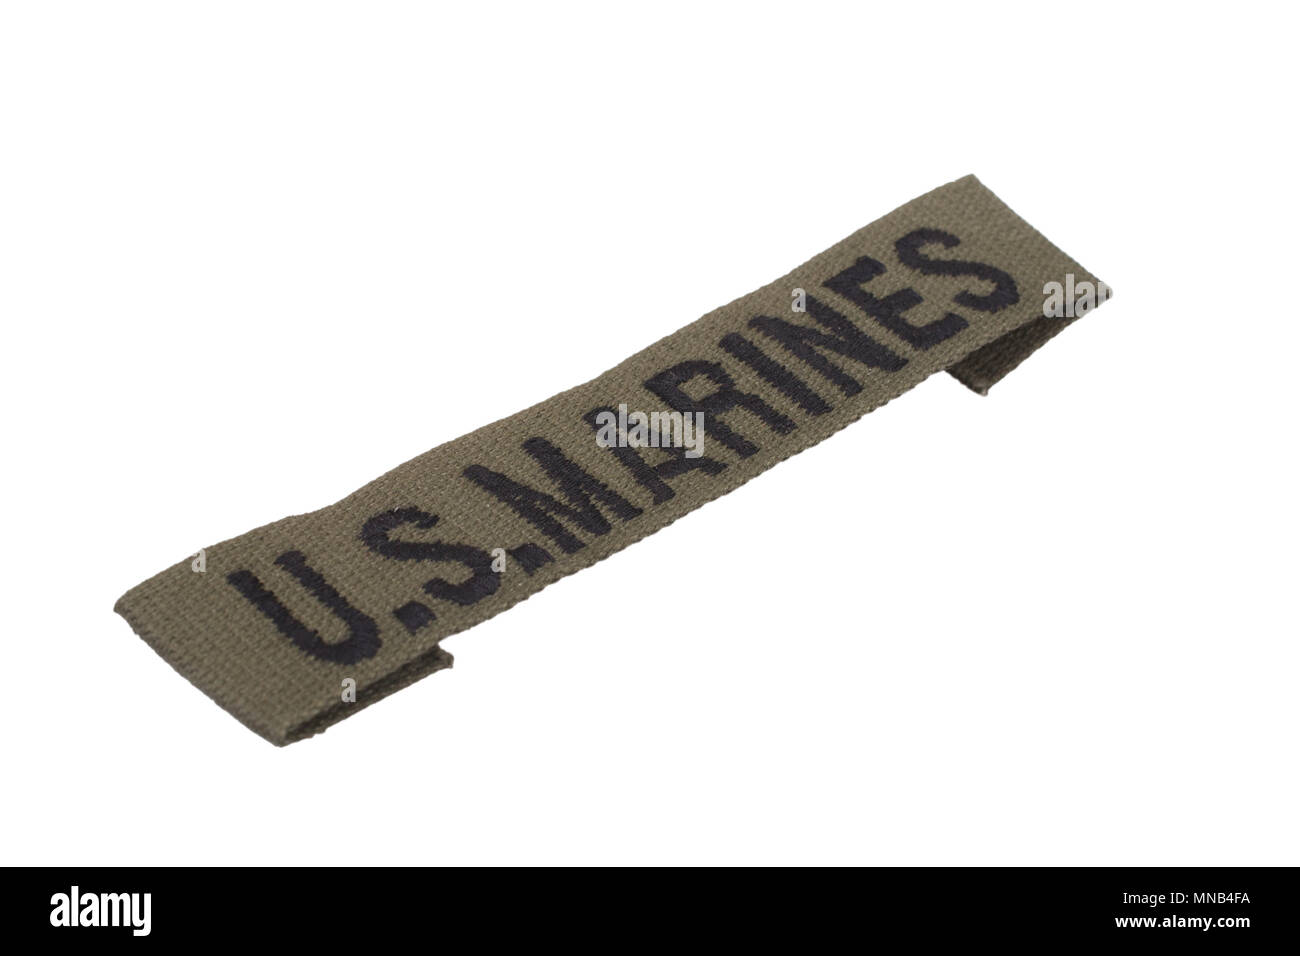 US MARINES uniform badge isolated on white background Stock Photo